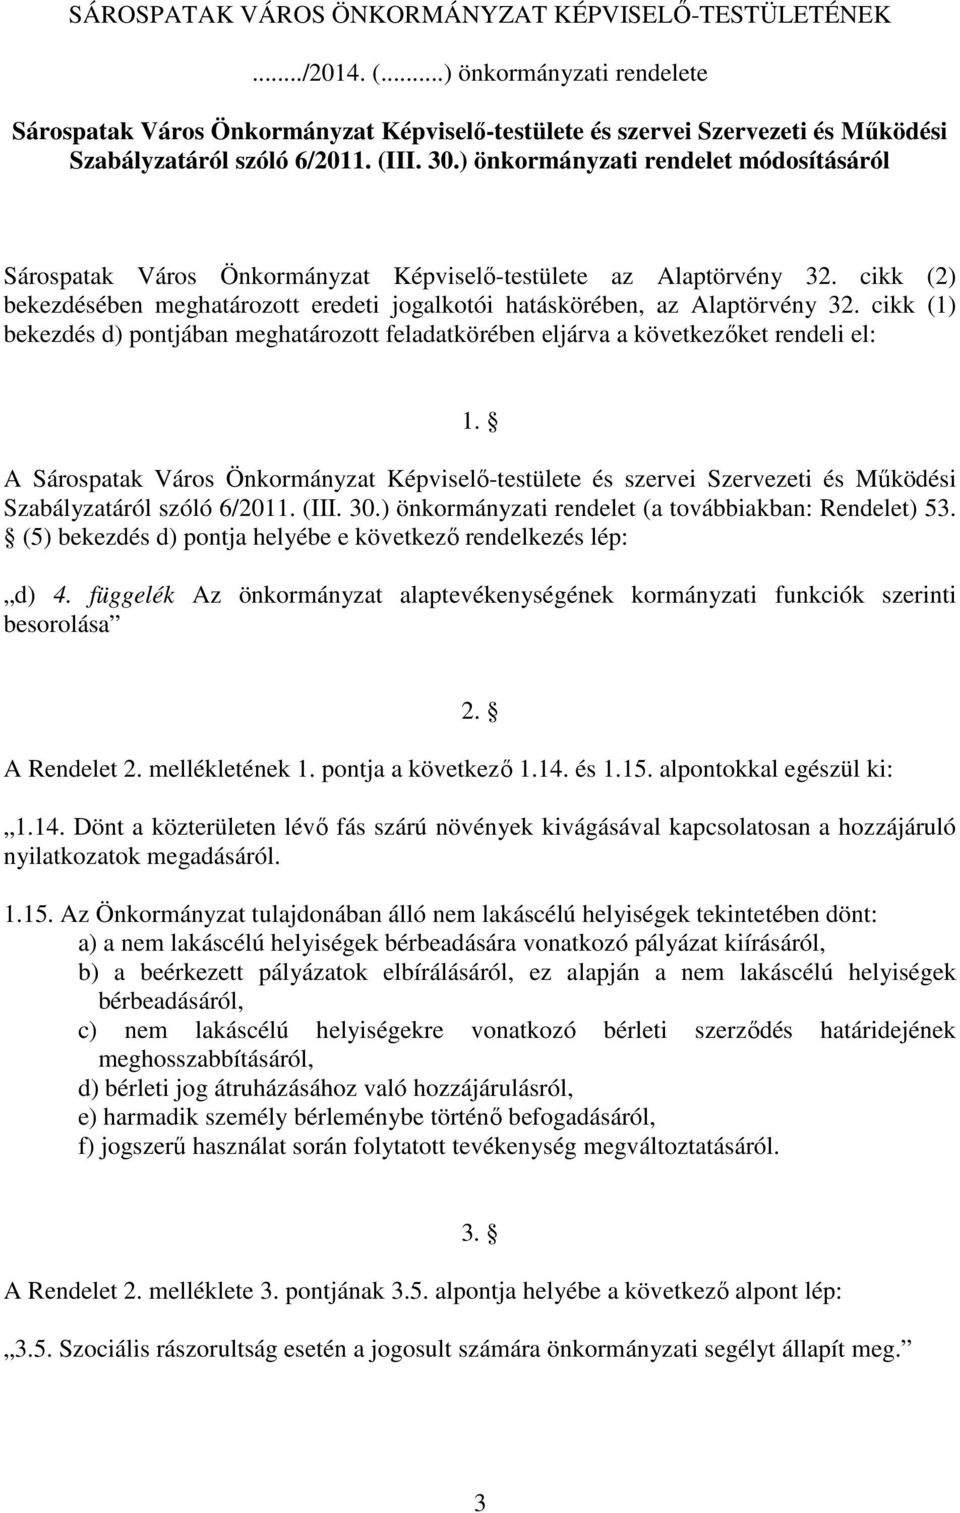 ) önkormányzati rendelet módosításáról Sárospatak Város Önkormányzat Képviselı-testülete az Alaptörvény 32. cikk (2) bekezdésében meghatározott eredeti jogalkotói hatáskörében, az Alaptörvény 32.